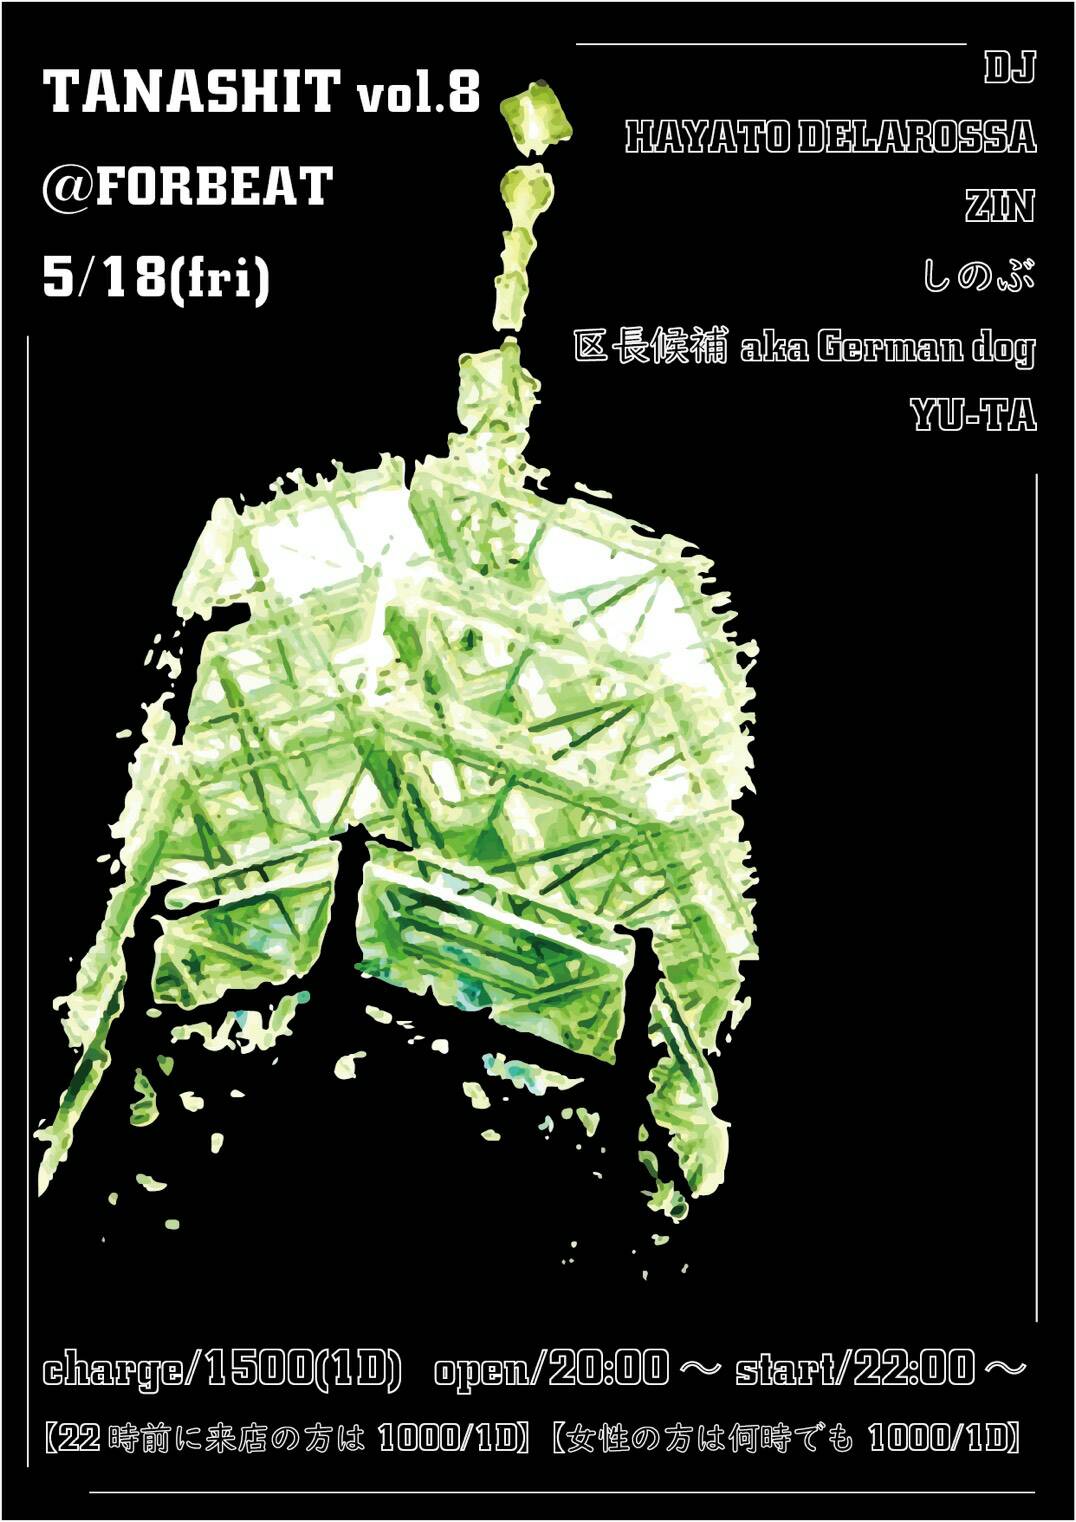 5/18(fri) 「TANASHIT」vol.8 @田無FORBEAT